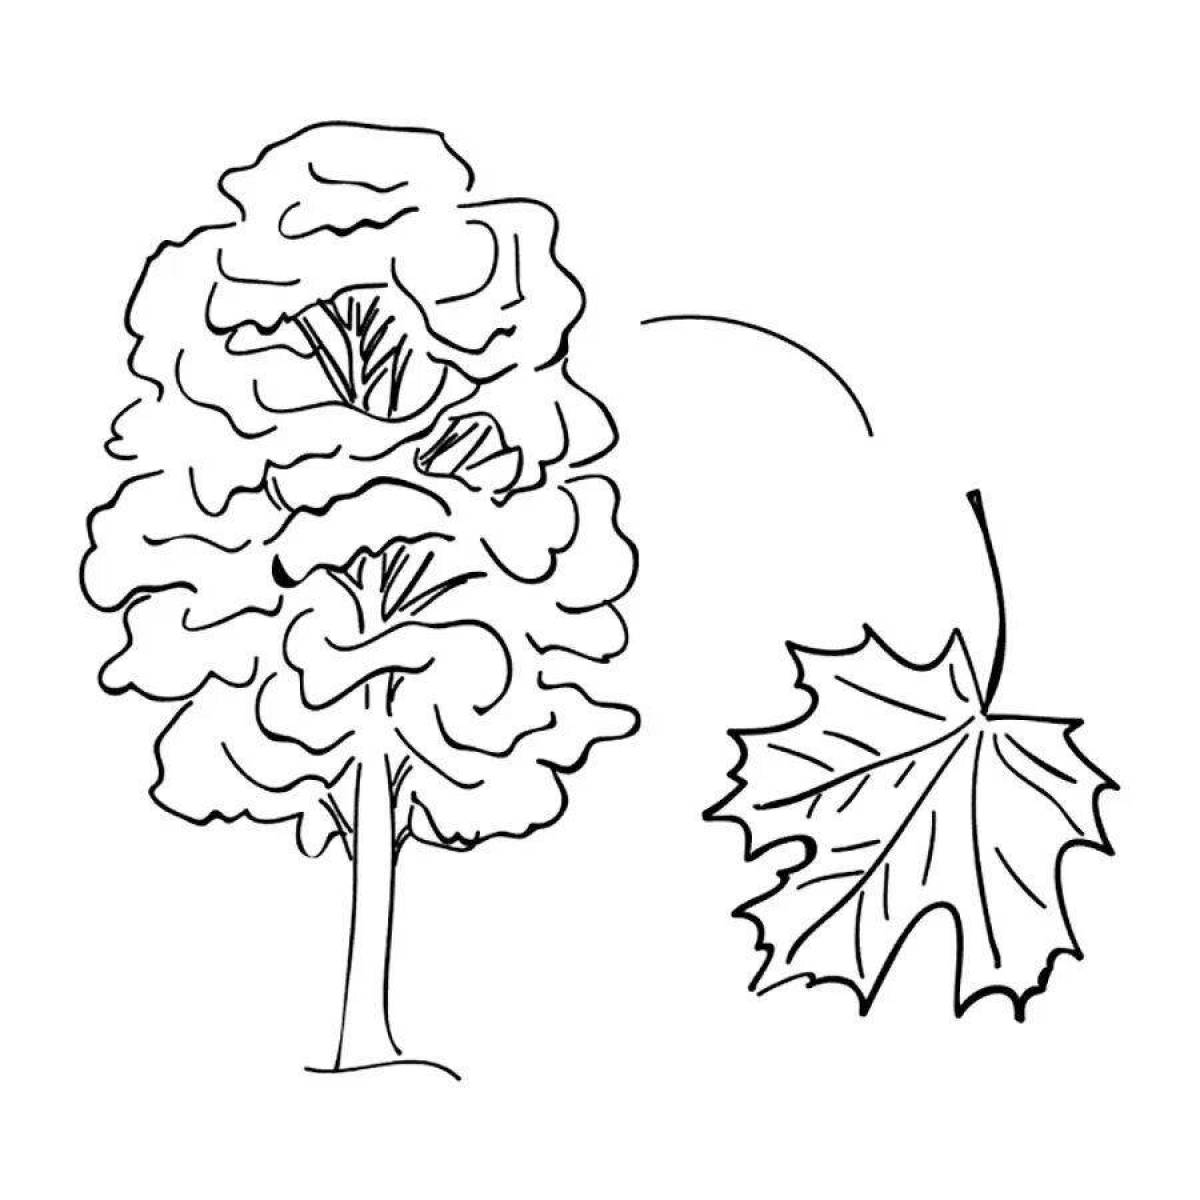 Tree maple #3